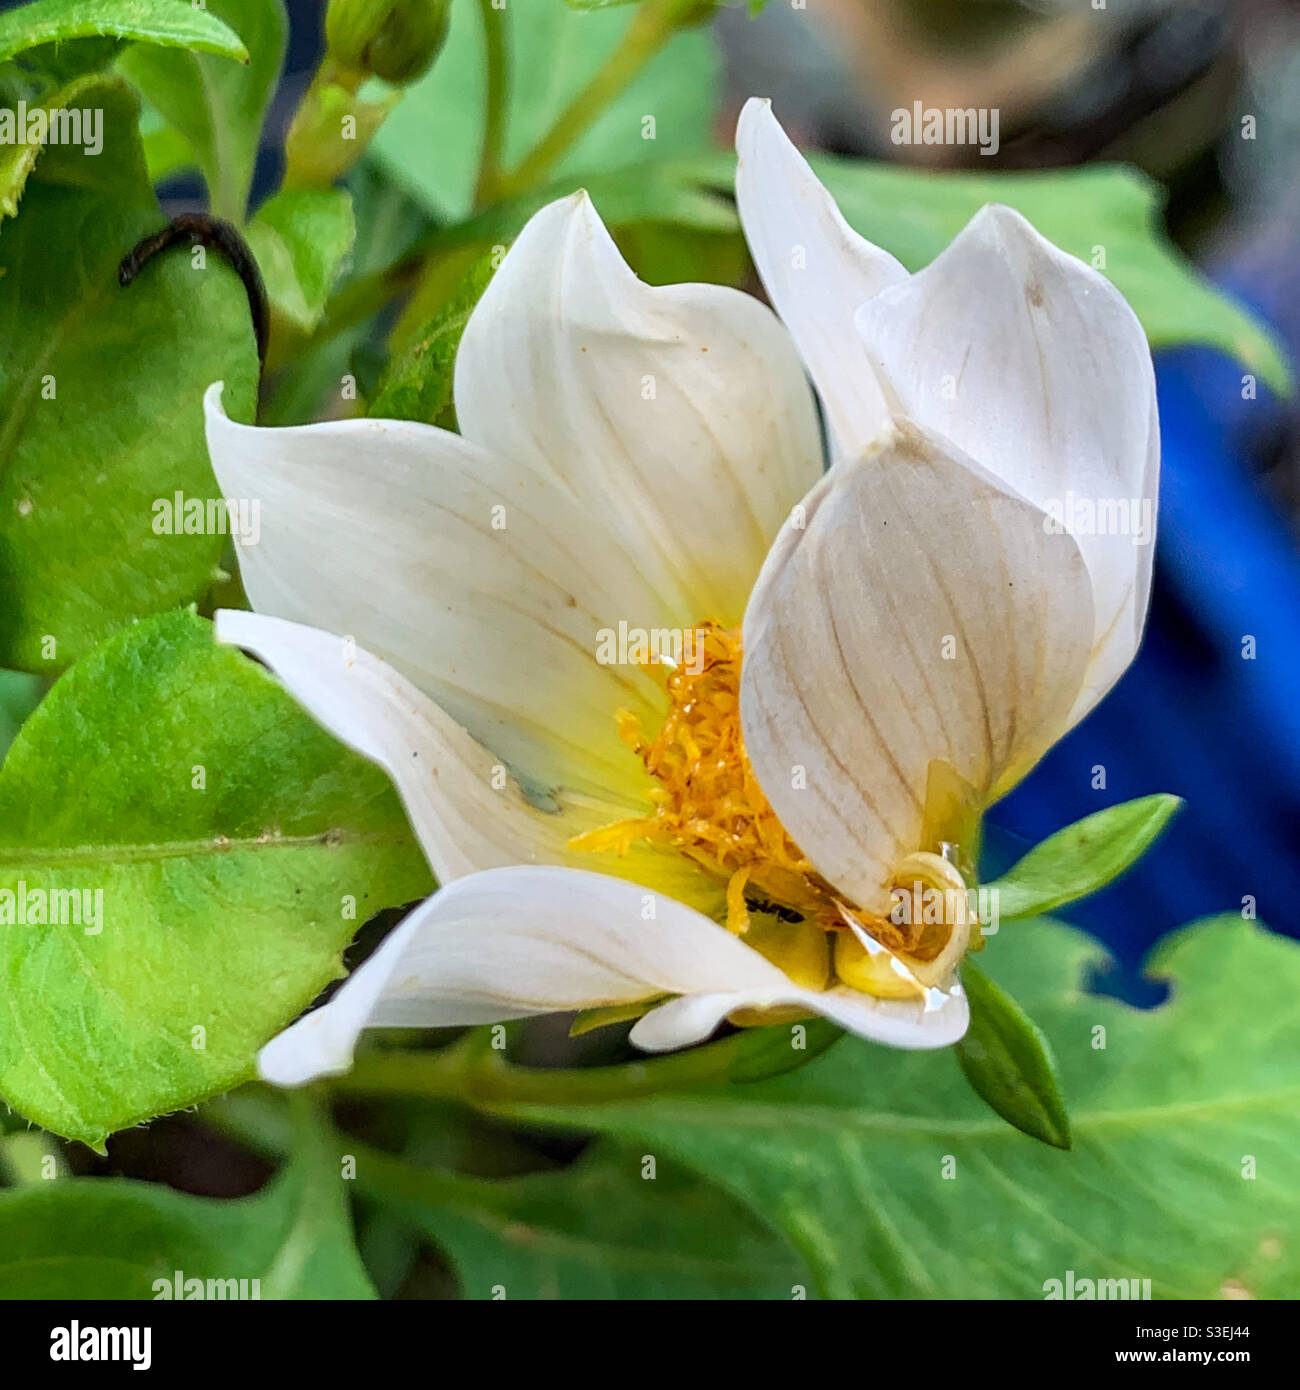 Bella macro di un'apertura cremosa fiore bianco dahlia, i suoi petali arriccianti aspetto artistico Foto Stock